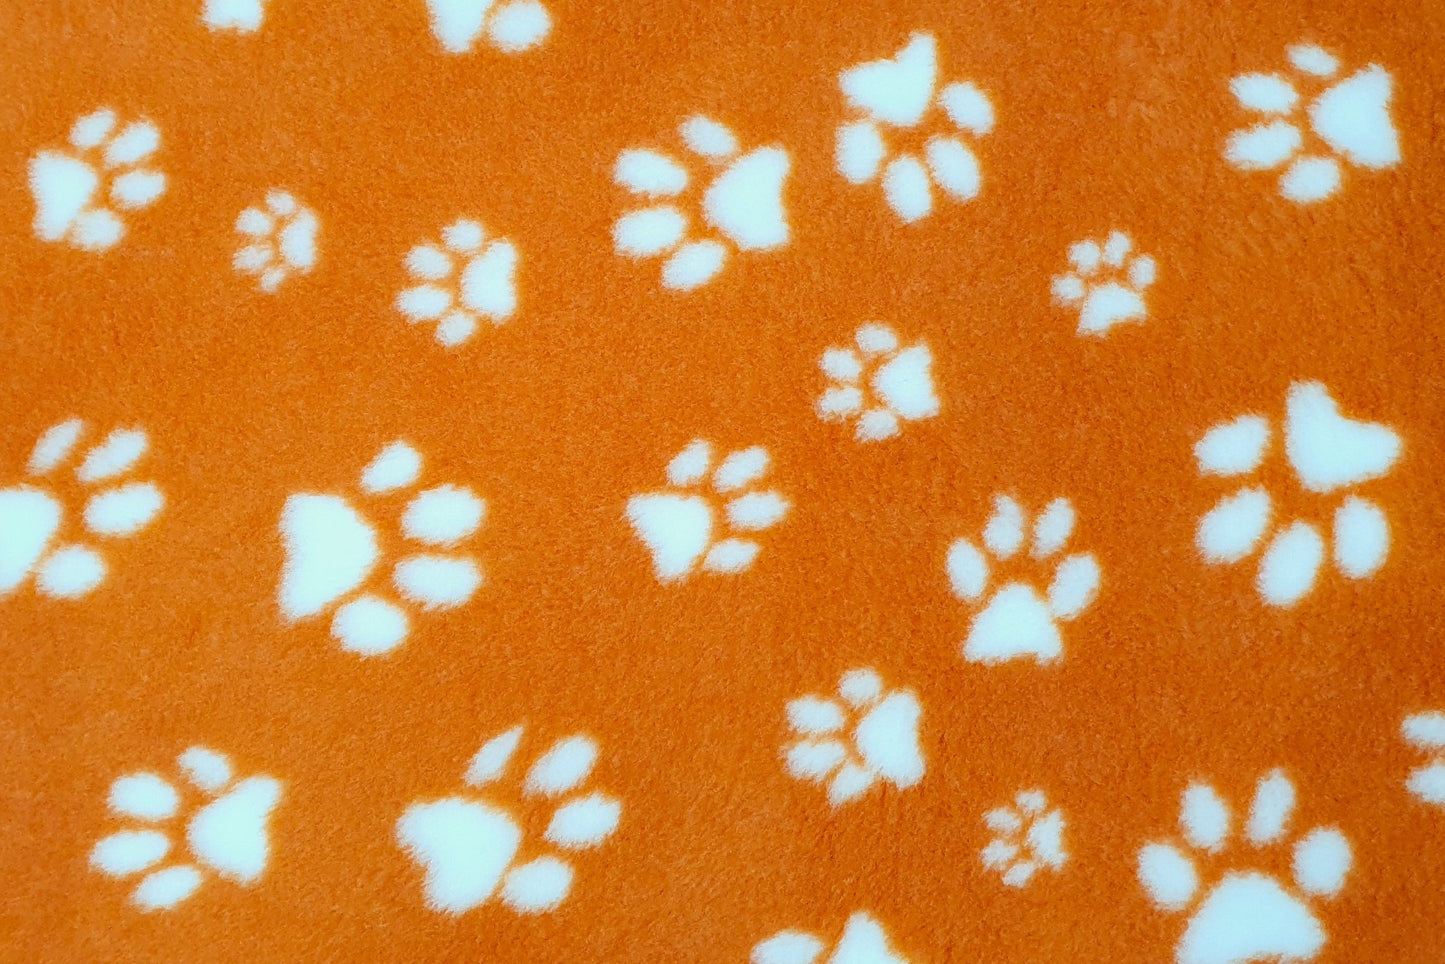 Vet Bed - Rubber Backed - Orange with White Designer Paws